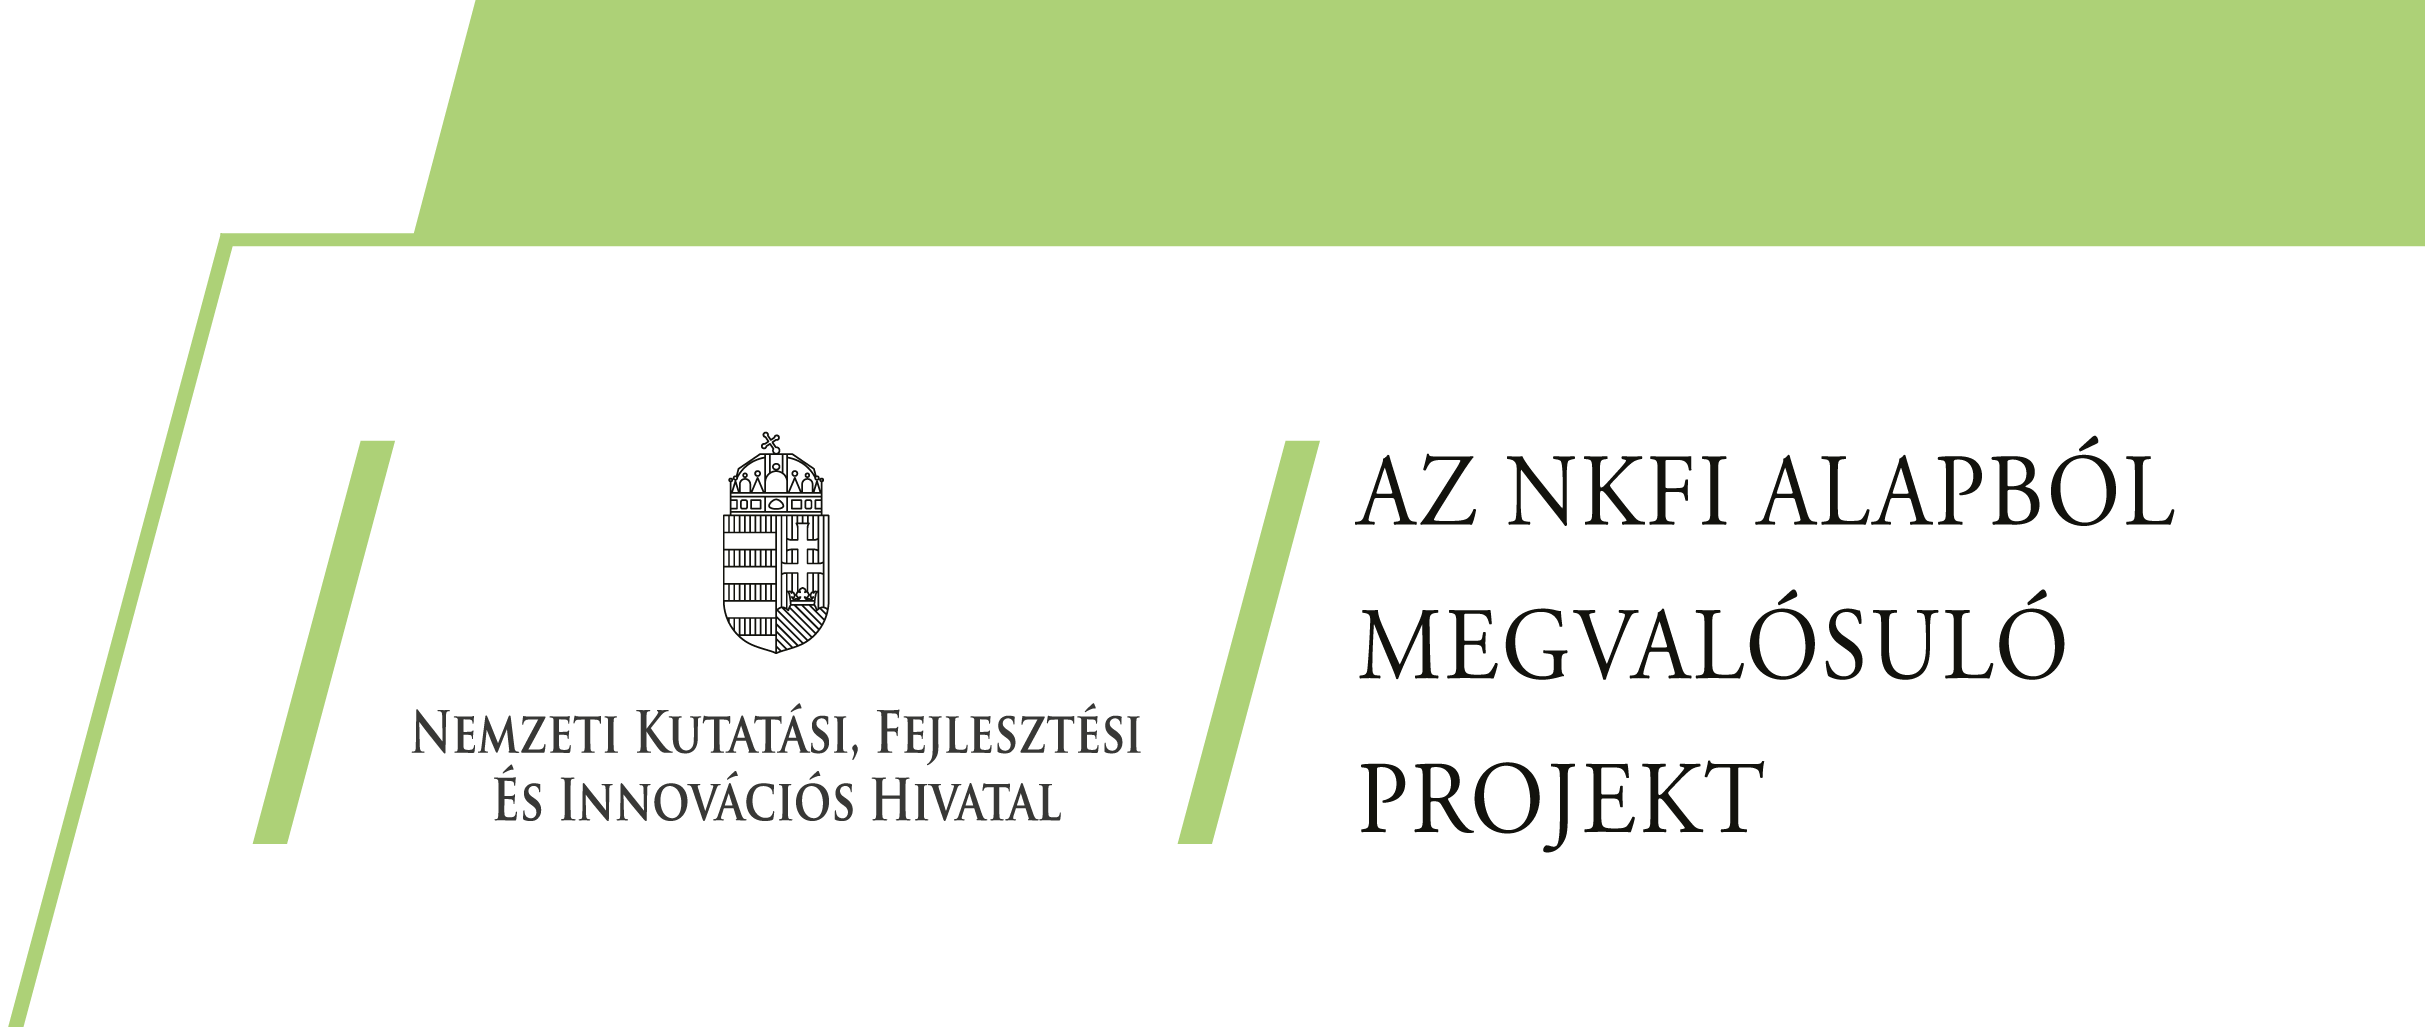 Az NKFI Alapból megvalósuló projekt.